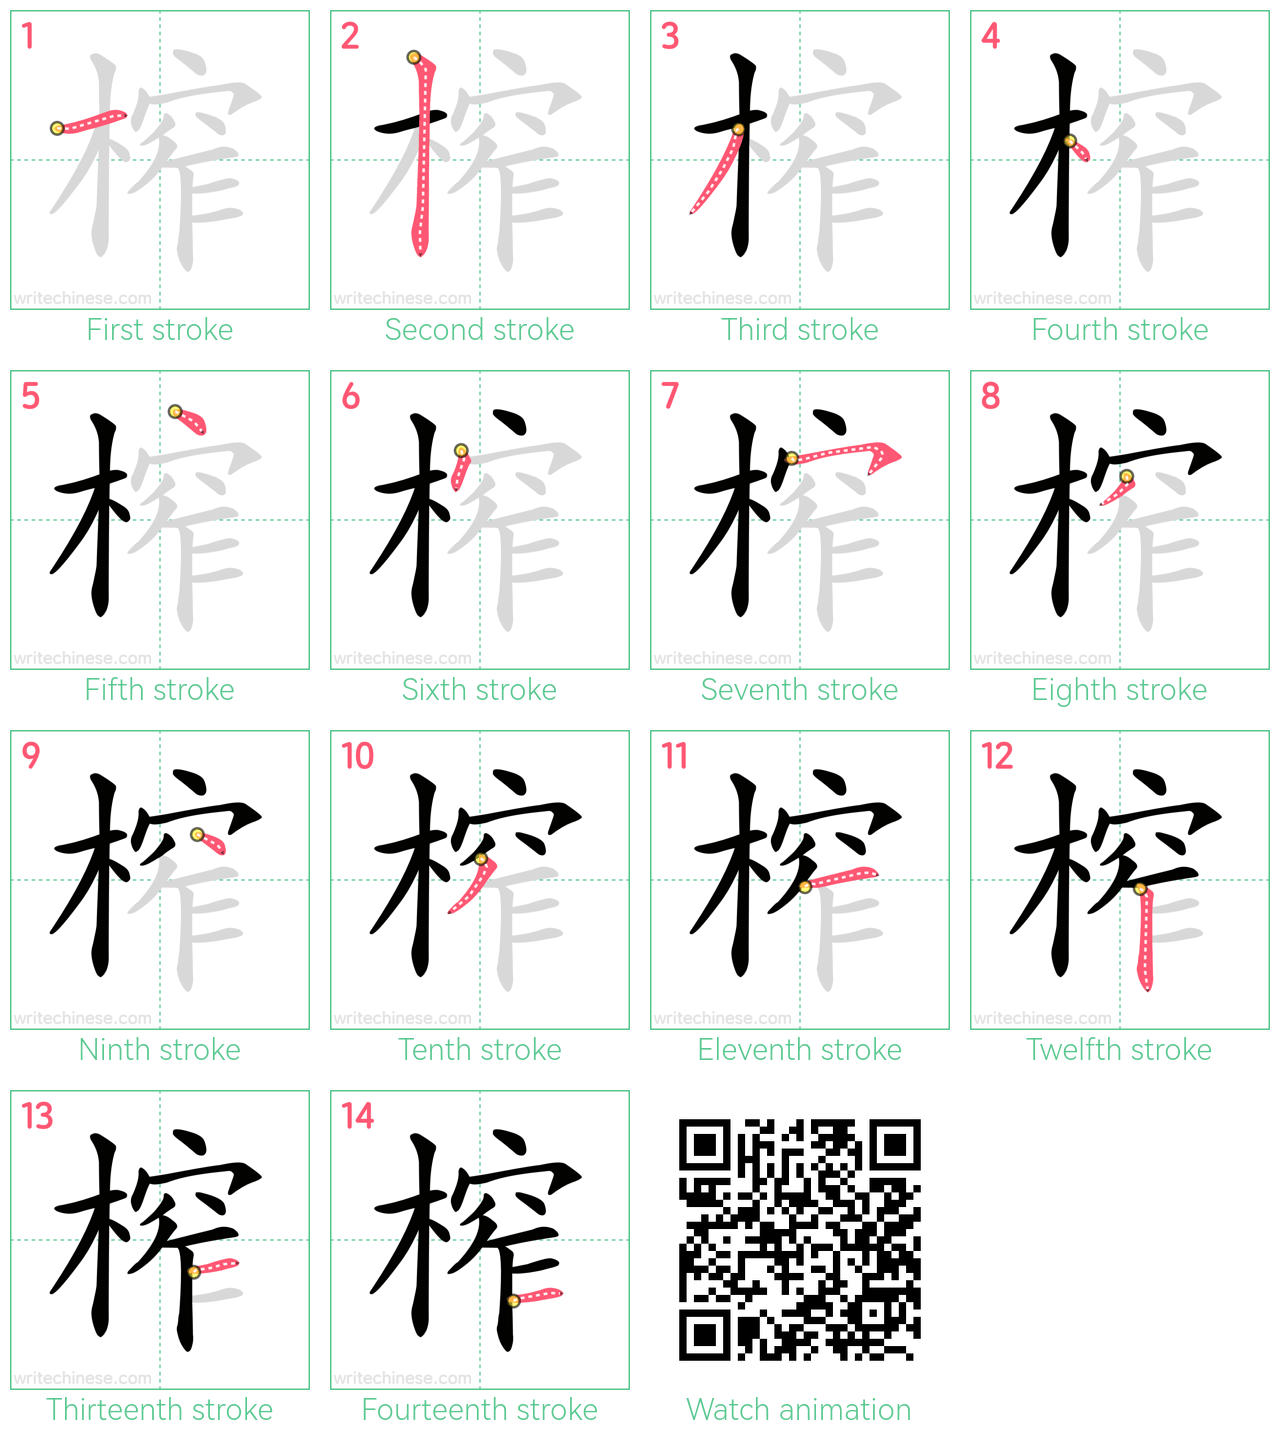 榨 step-by-step stroke order diagrams